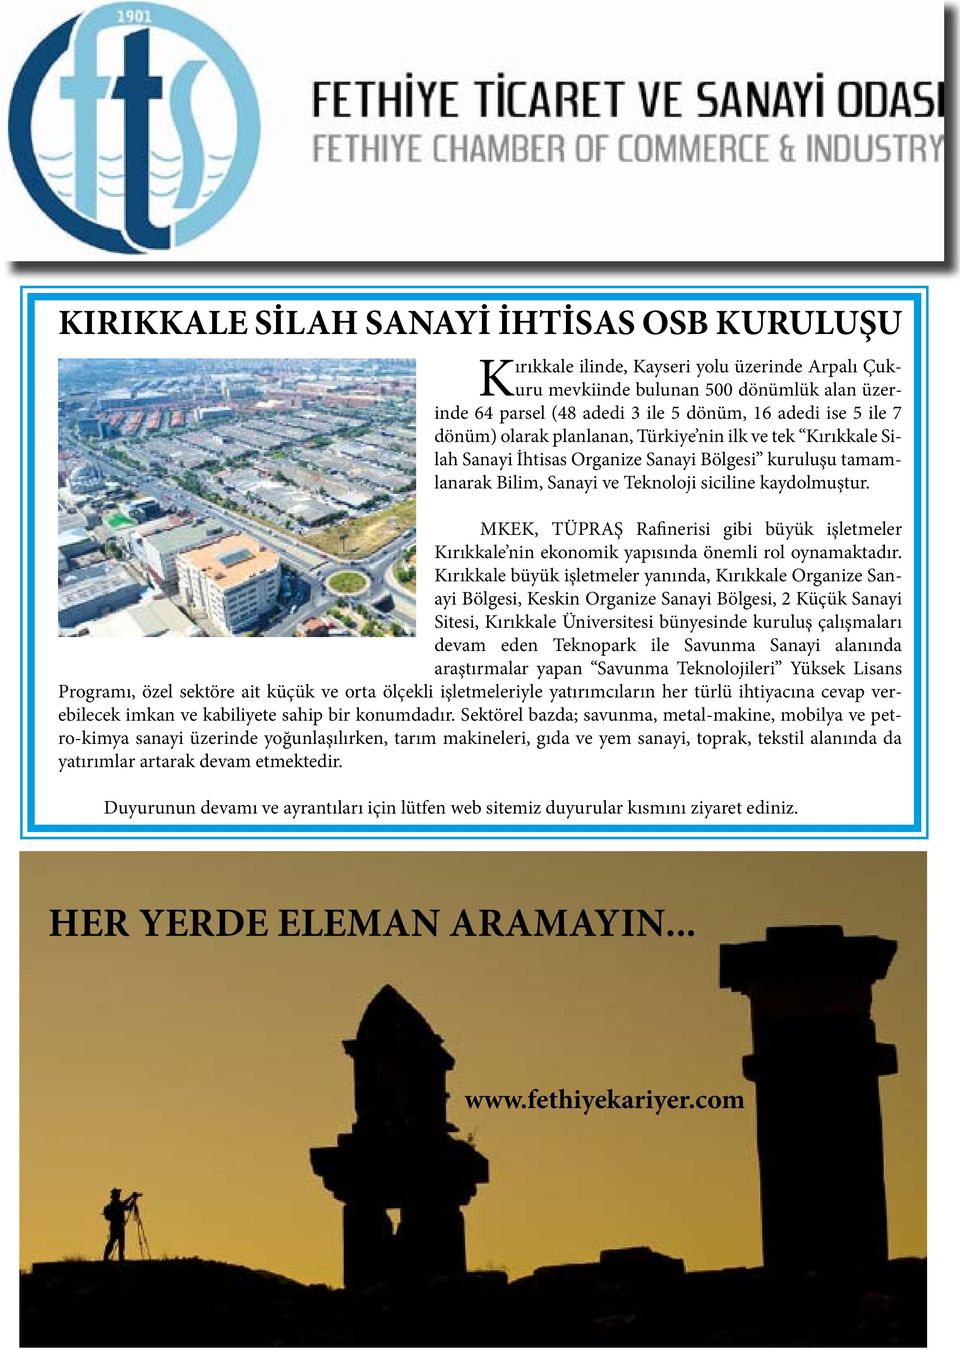 MKEK, TÜPRAŞ Rafinerisi gibi büyük işletmeler Kırıkkale nin ekonomik yapısında önemli rol oynamaktadır.